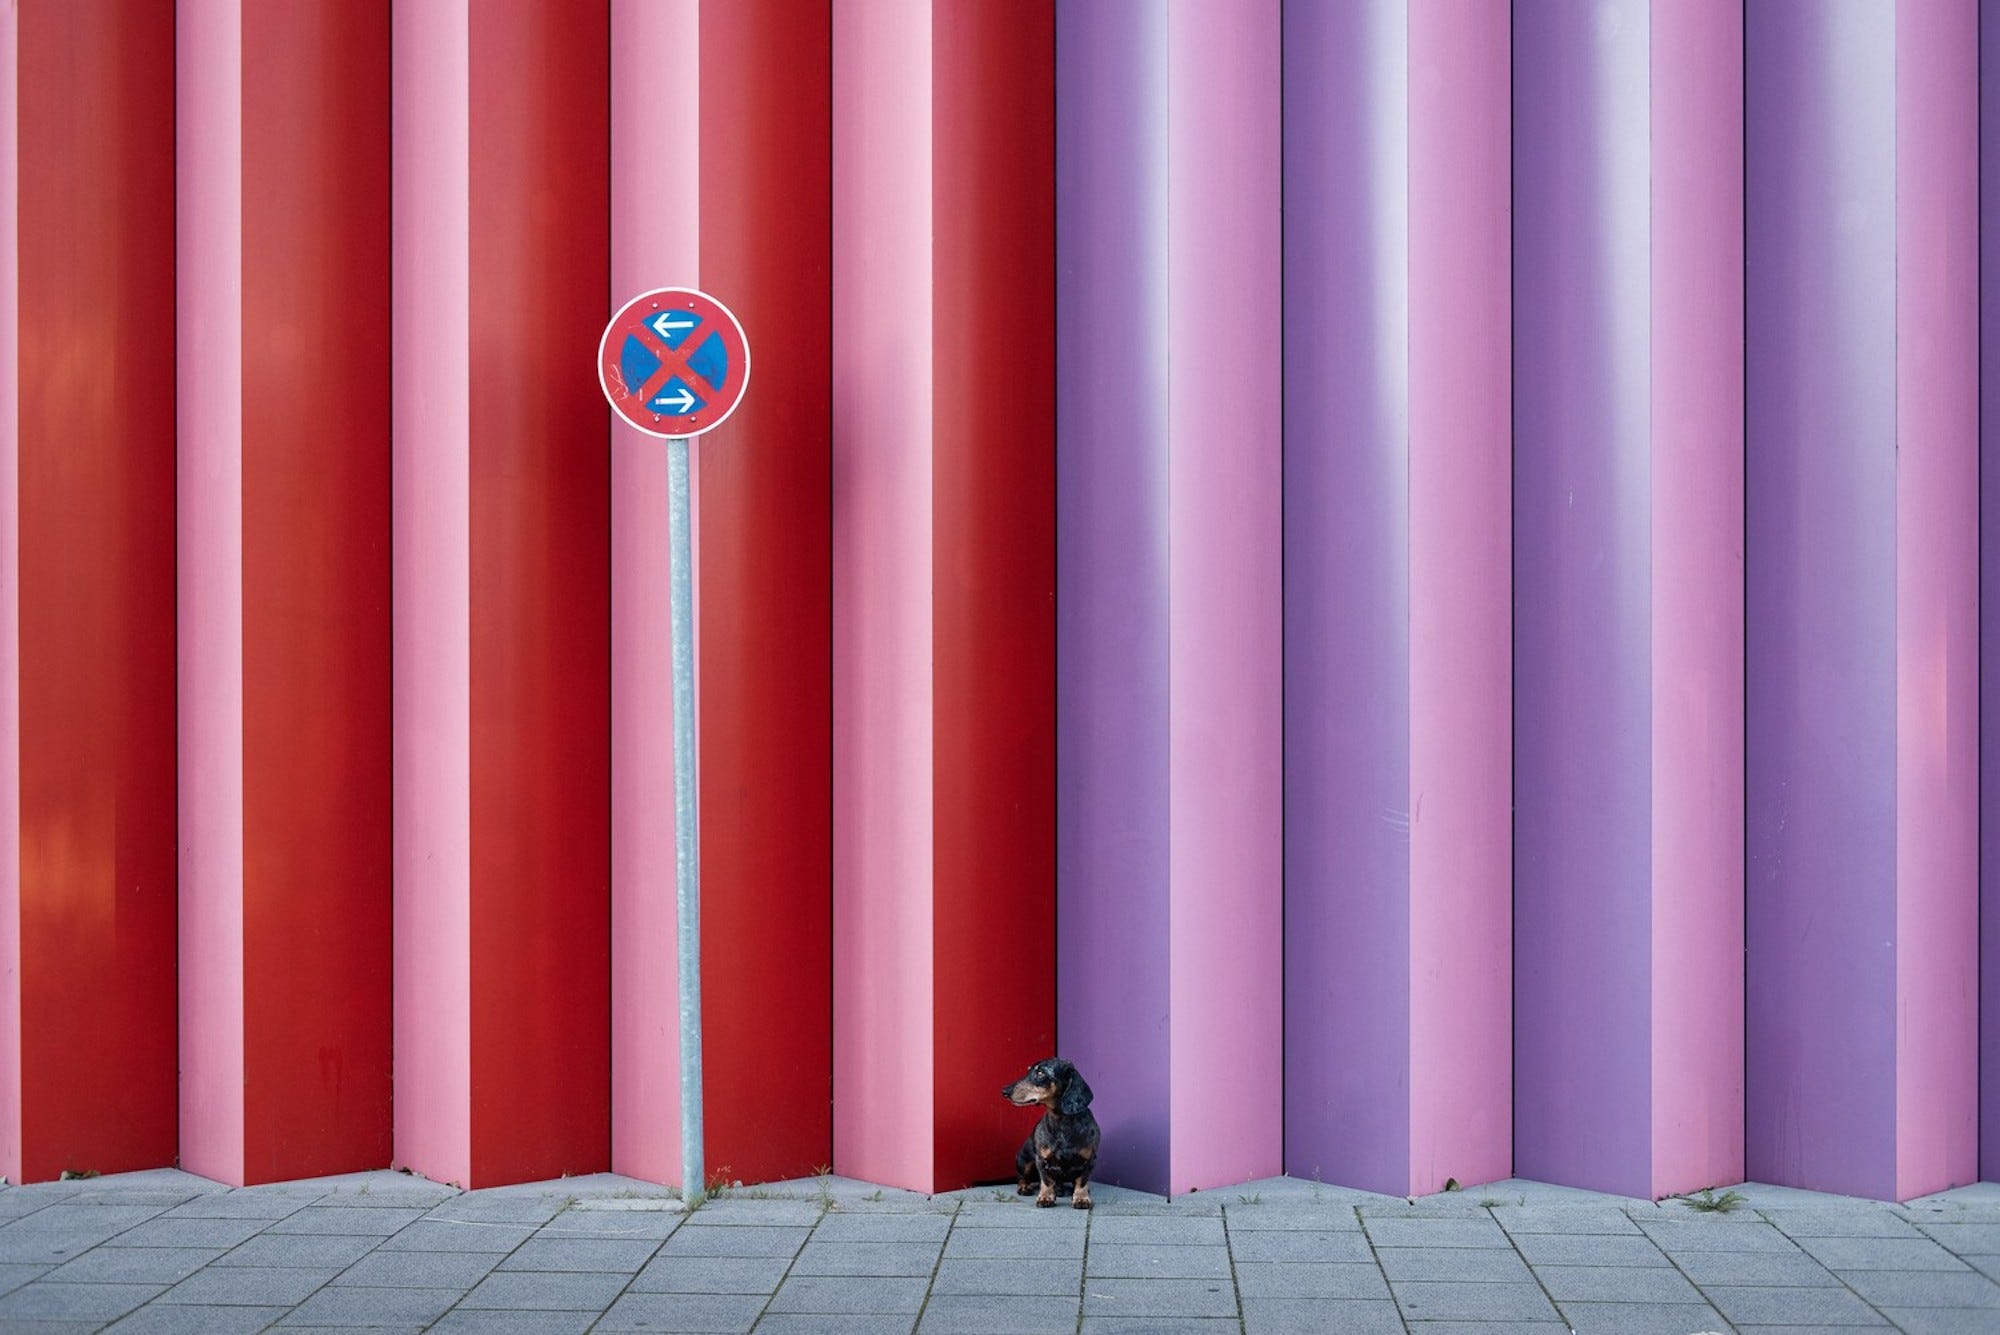 Ein kleiner Dackel steht vor einer rot-lila Wand.